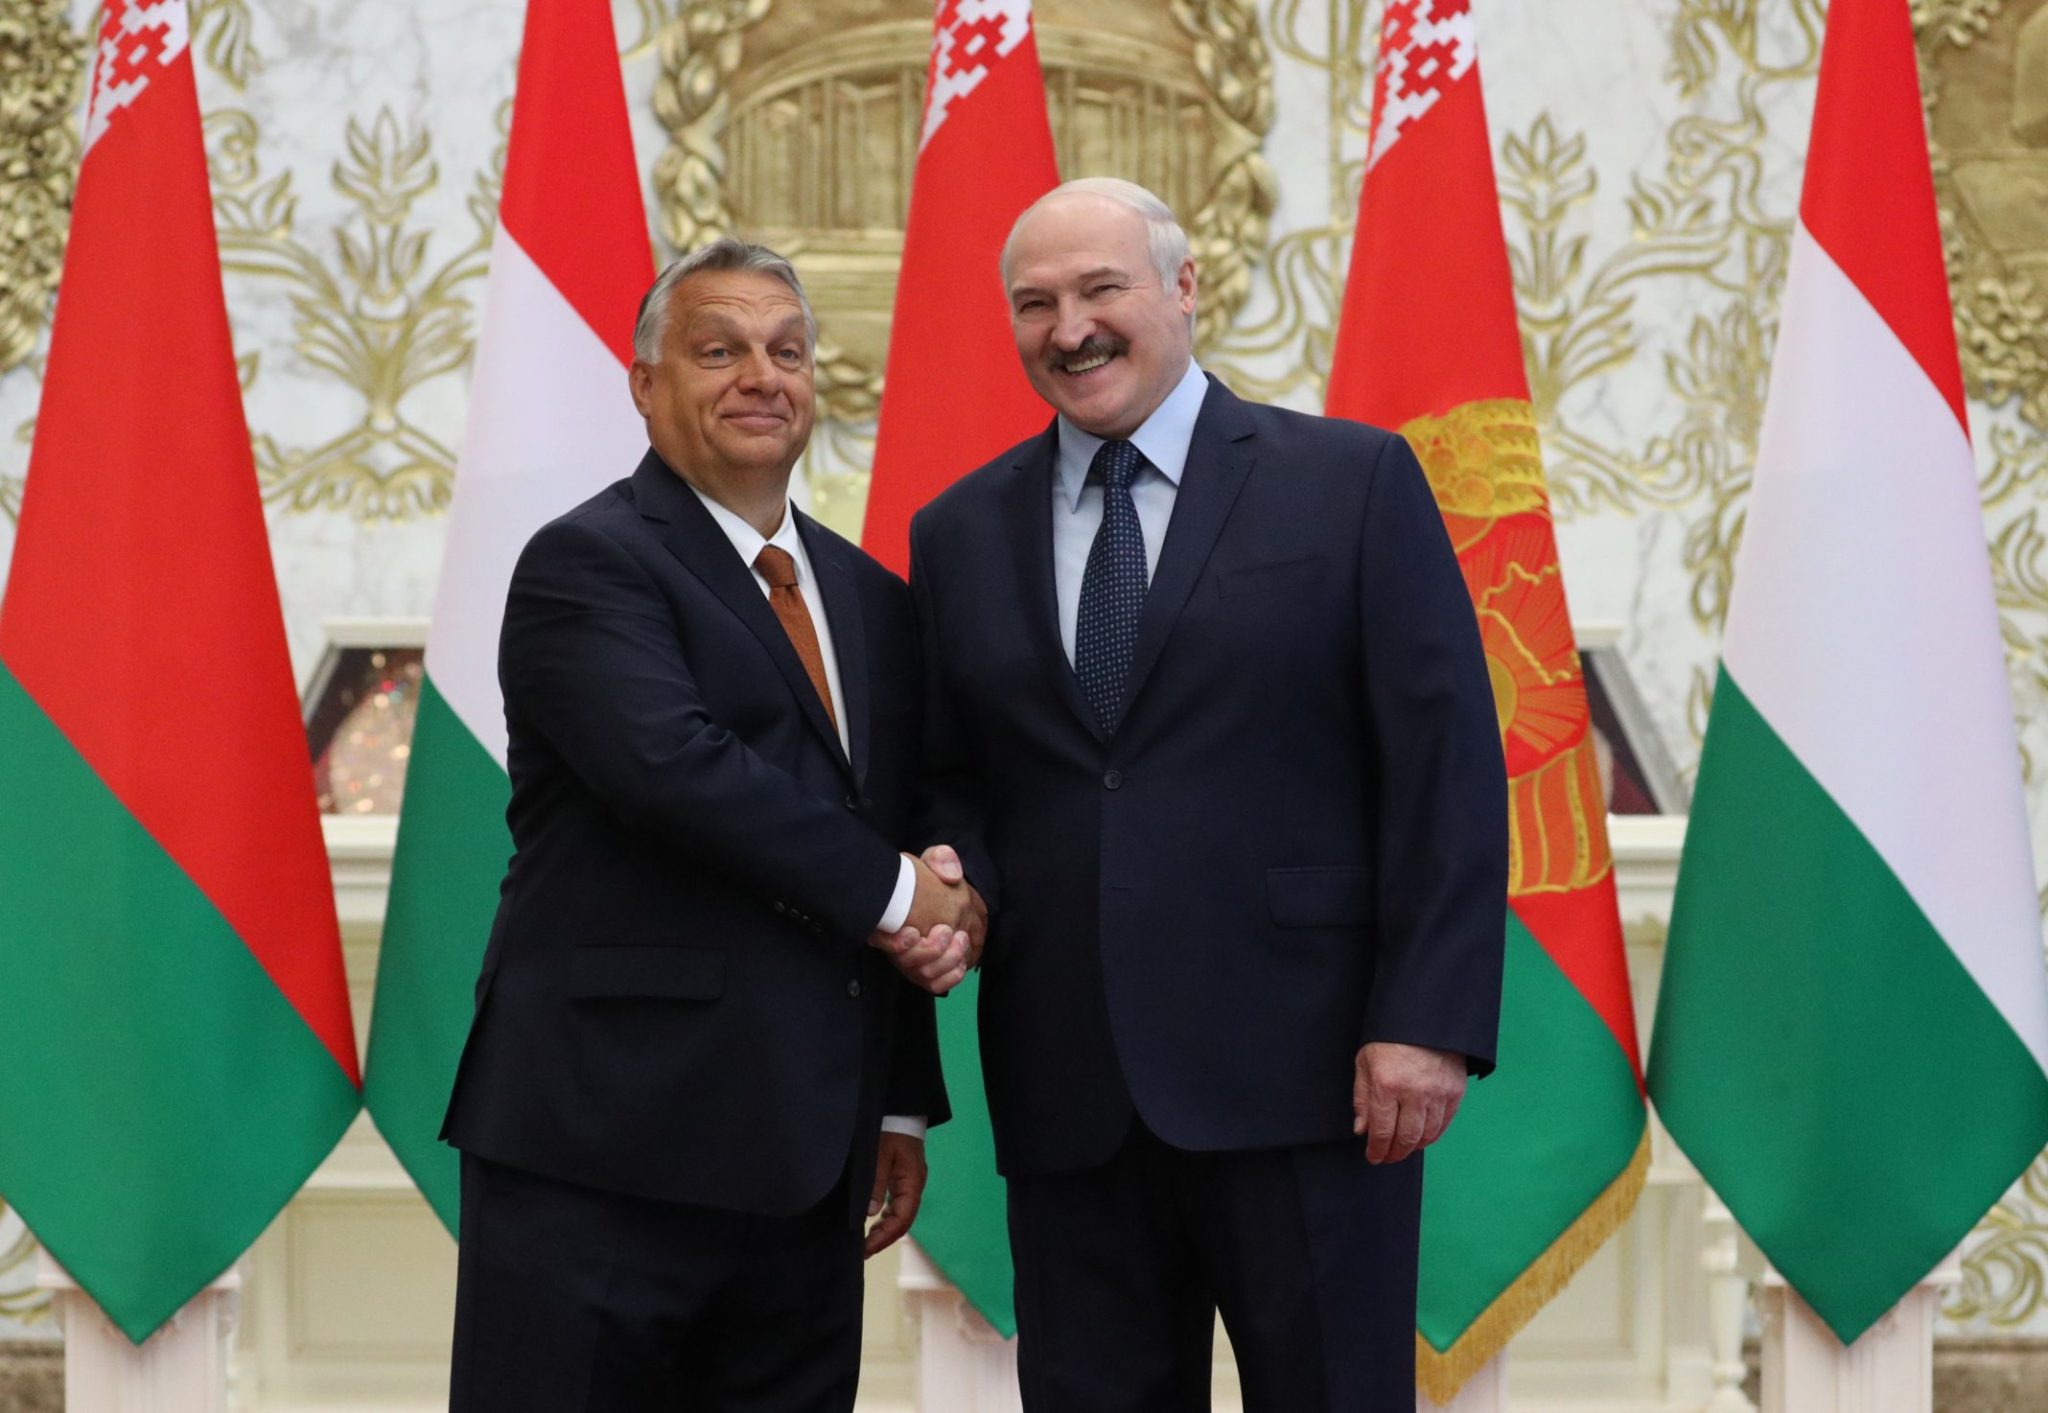 Беларусь и Венгрия смогут помочь установлению согласия в мире - Лукашенко